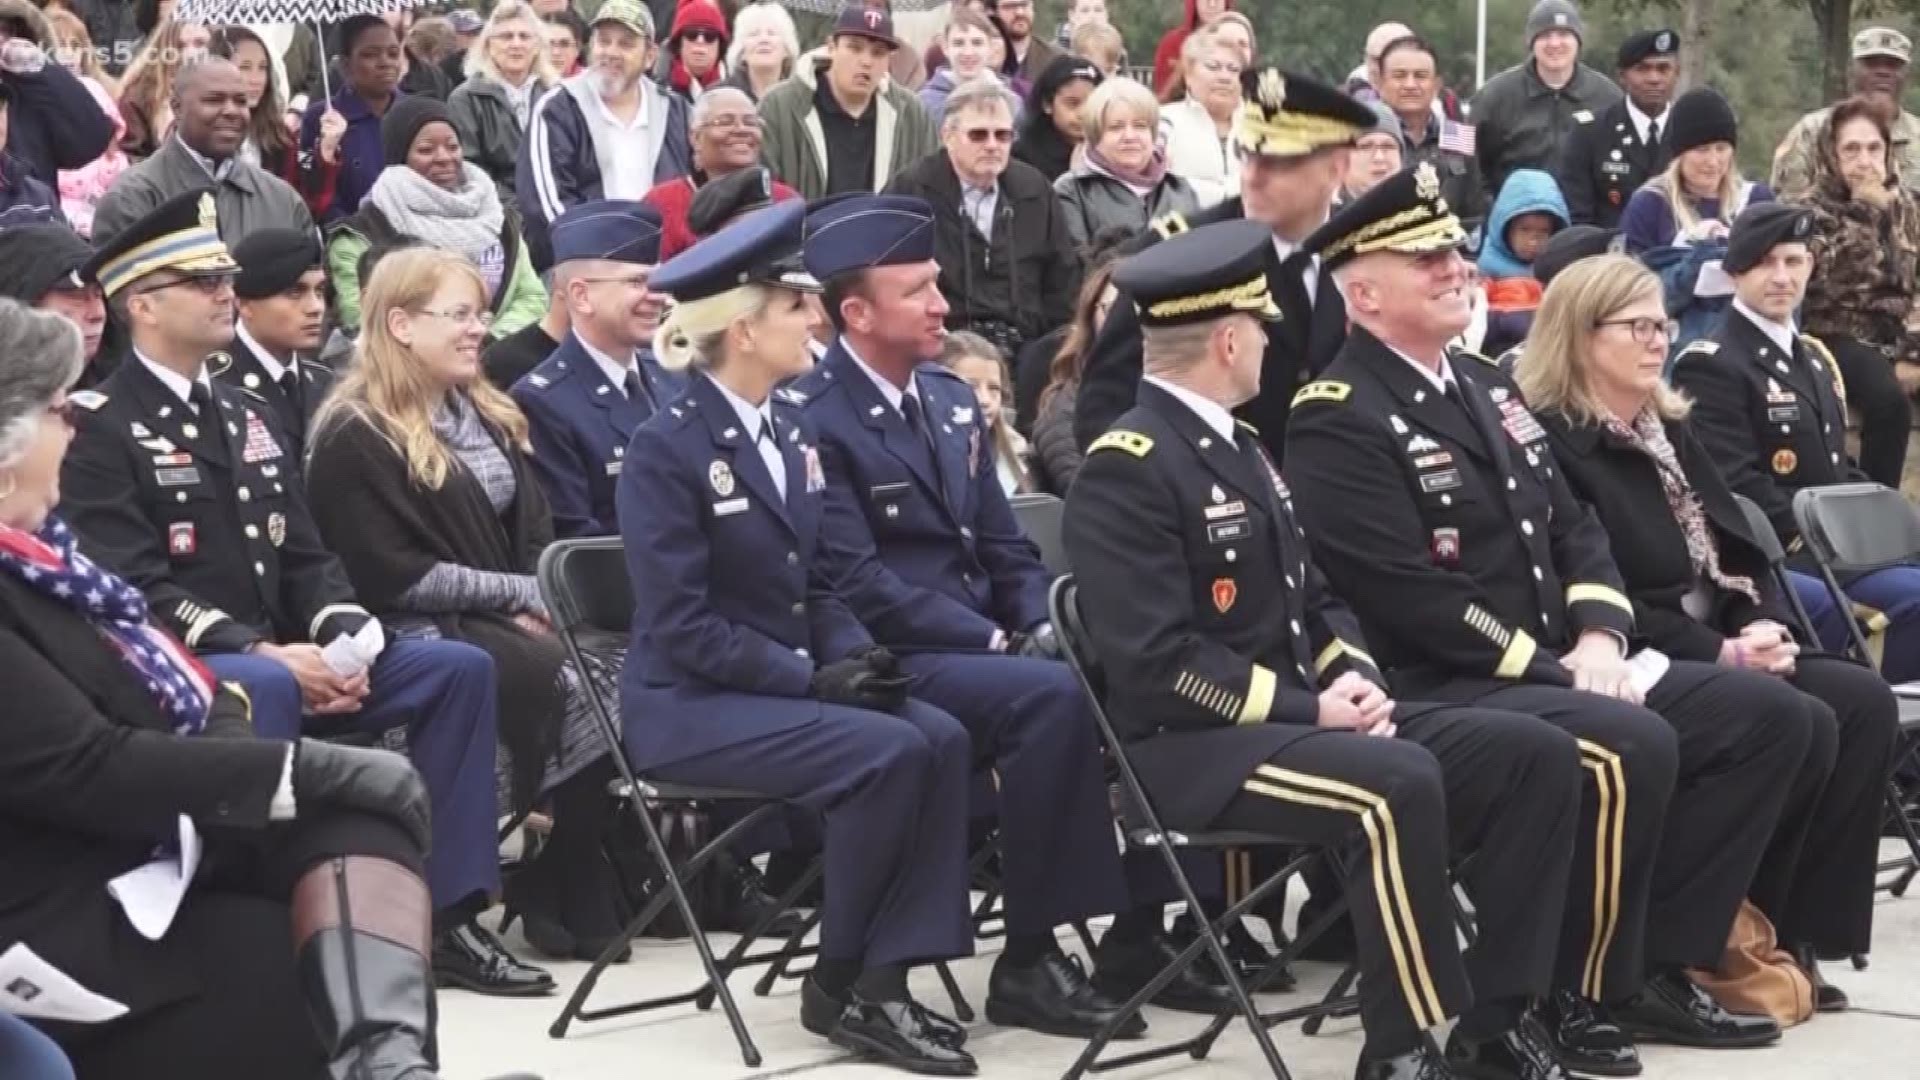 San Antonio Veterans Day ceremony recognizes the 100th anniversary of